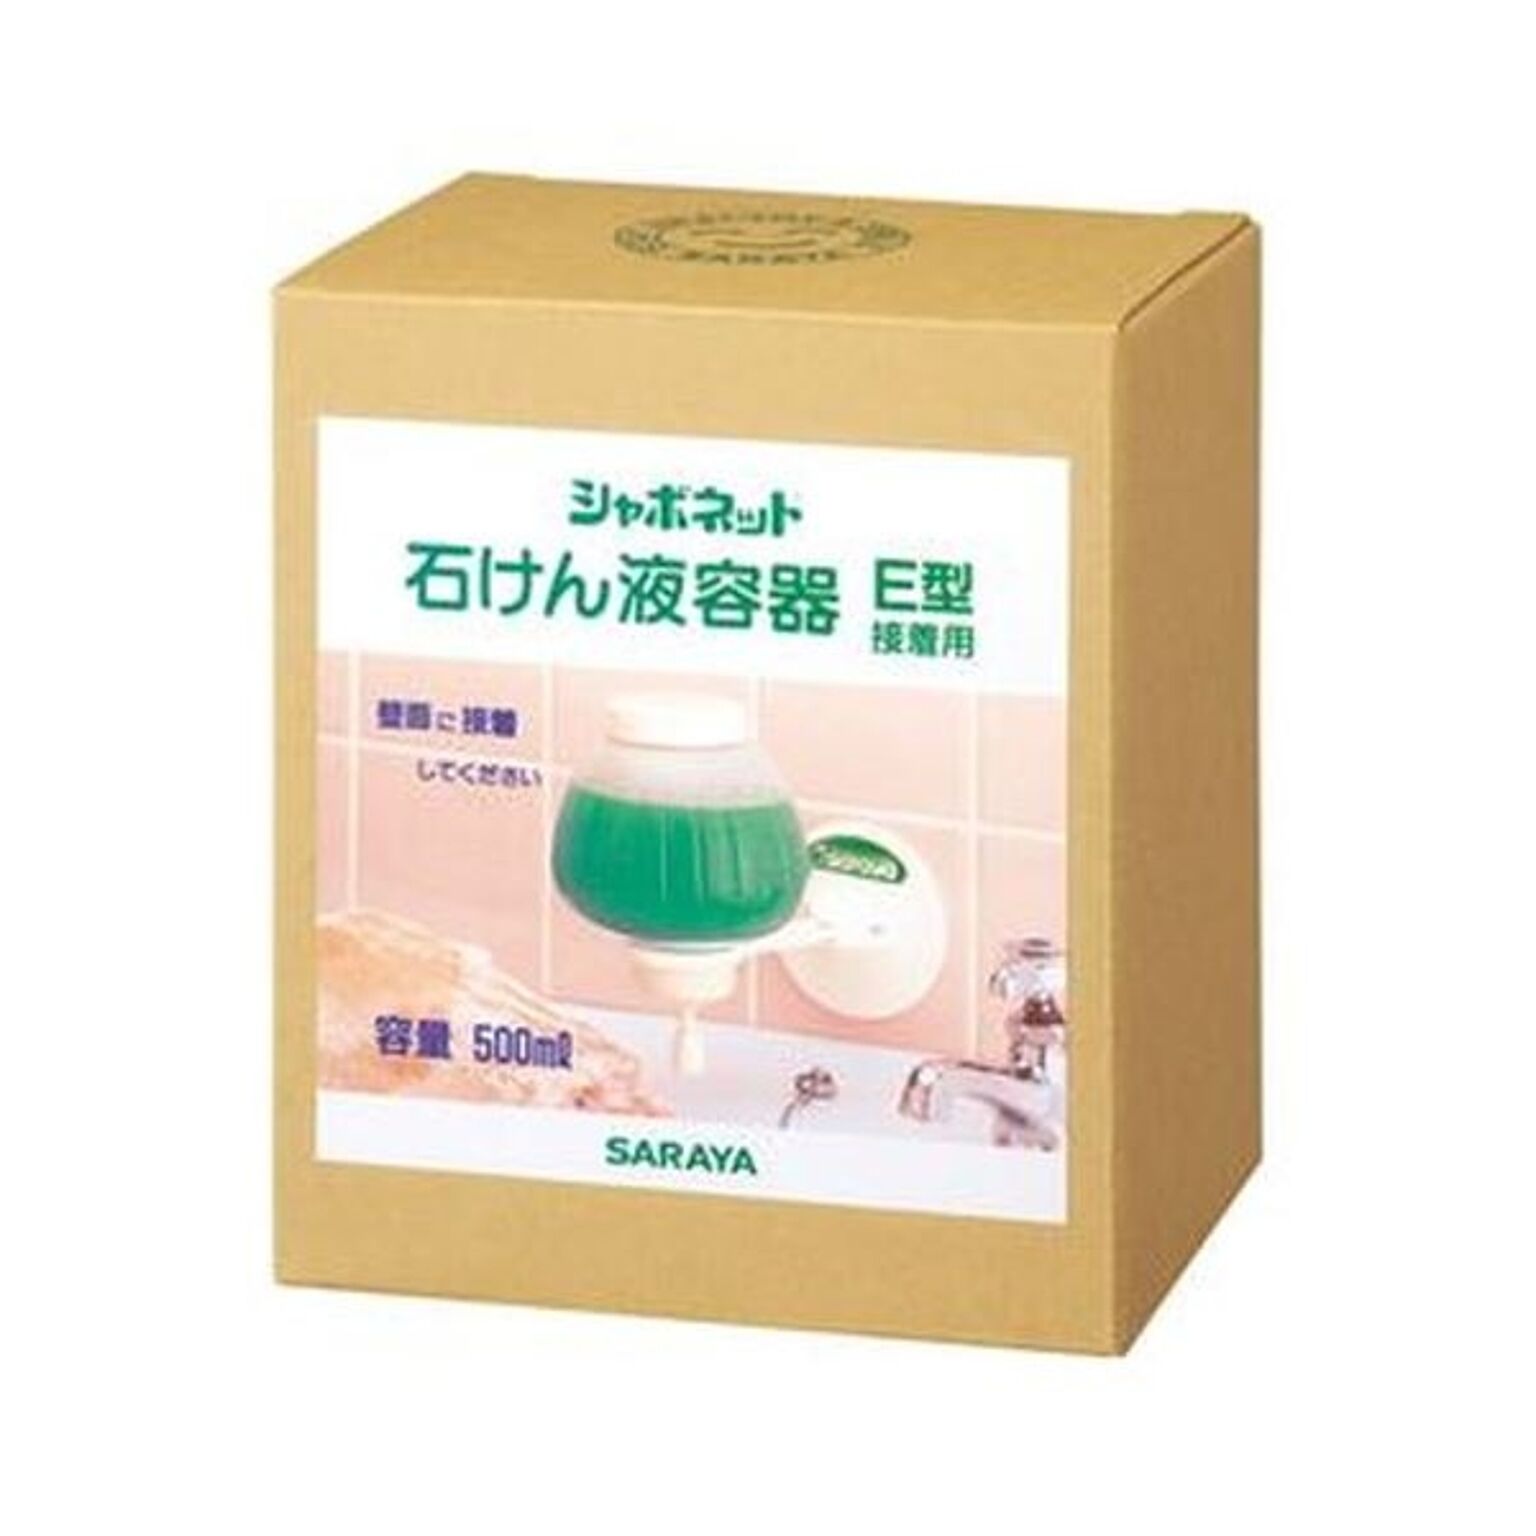 （まとめ）サラヤ シャボネット石鹸液専用容器E型接着用 500ml 1個【×5セット】